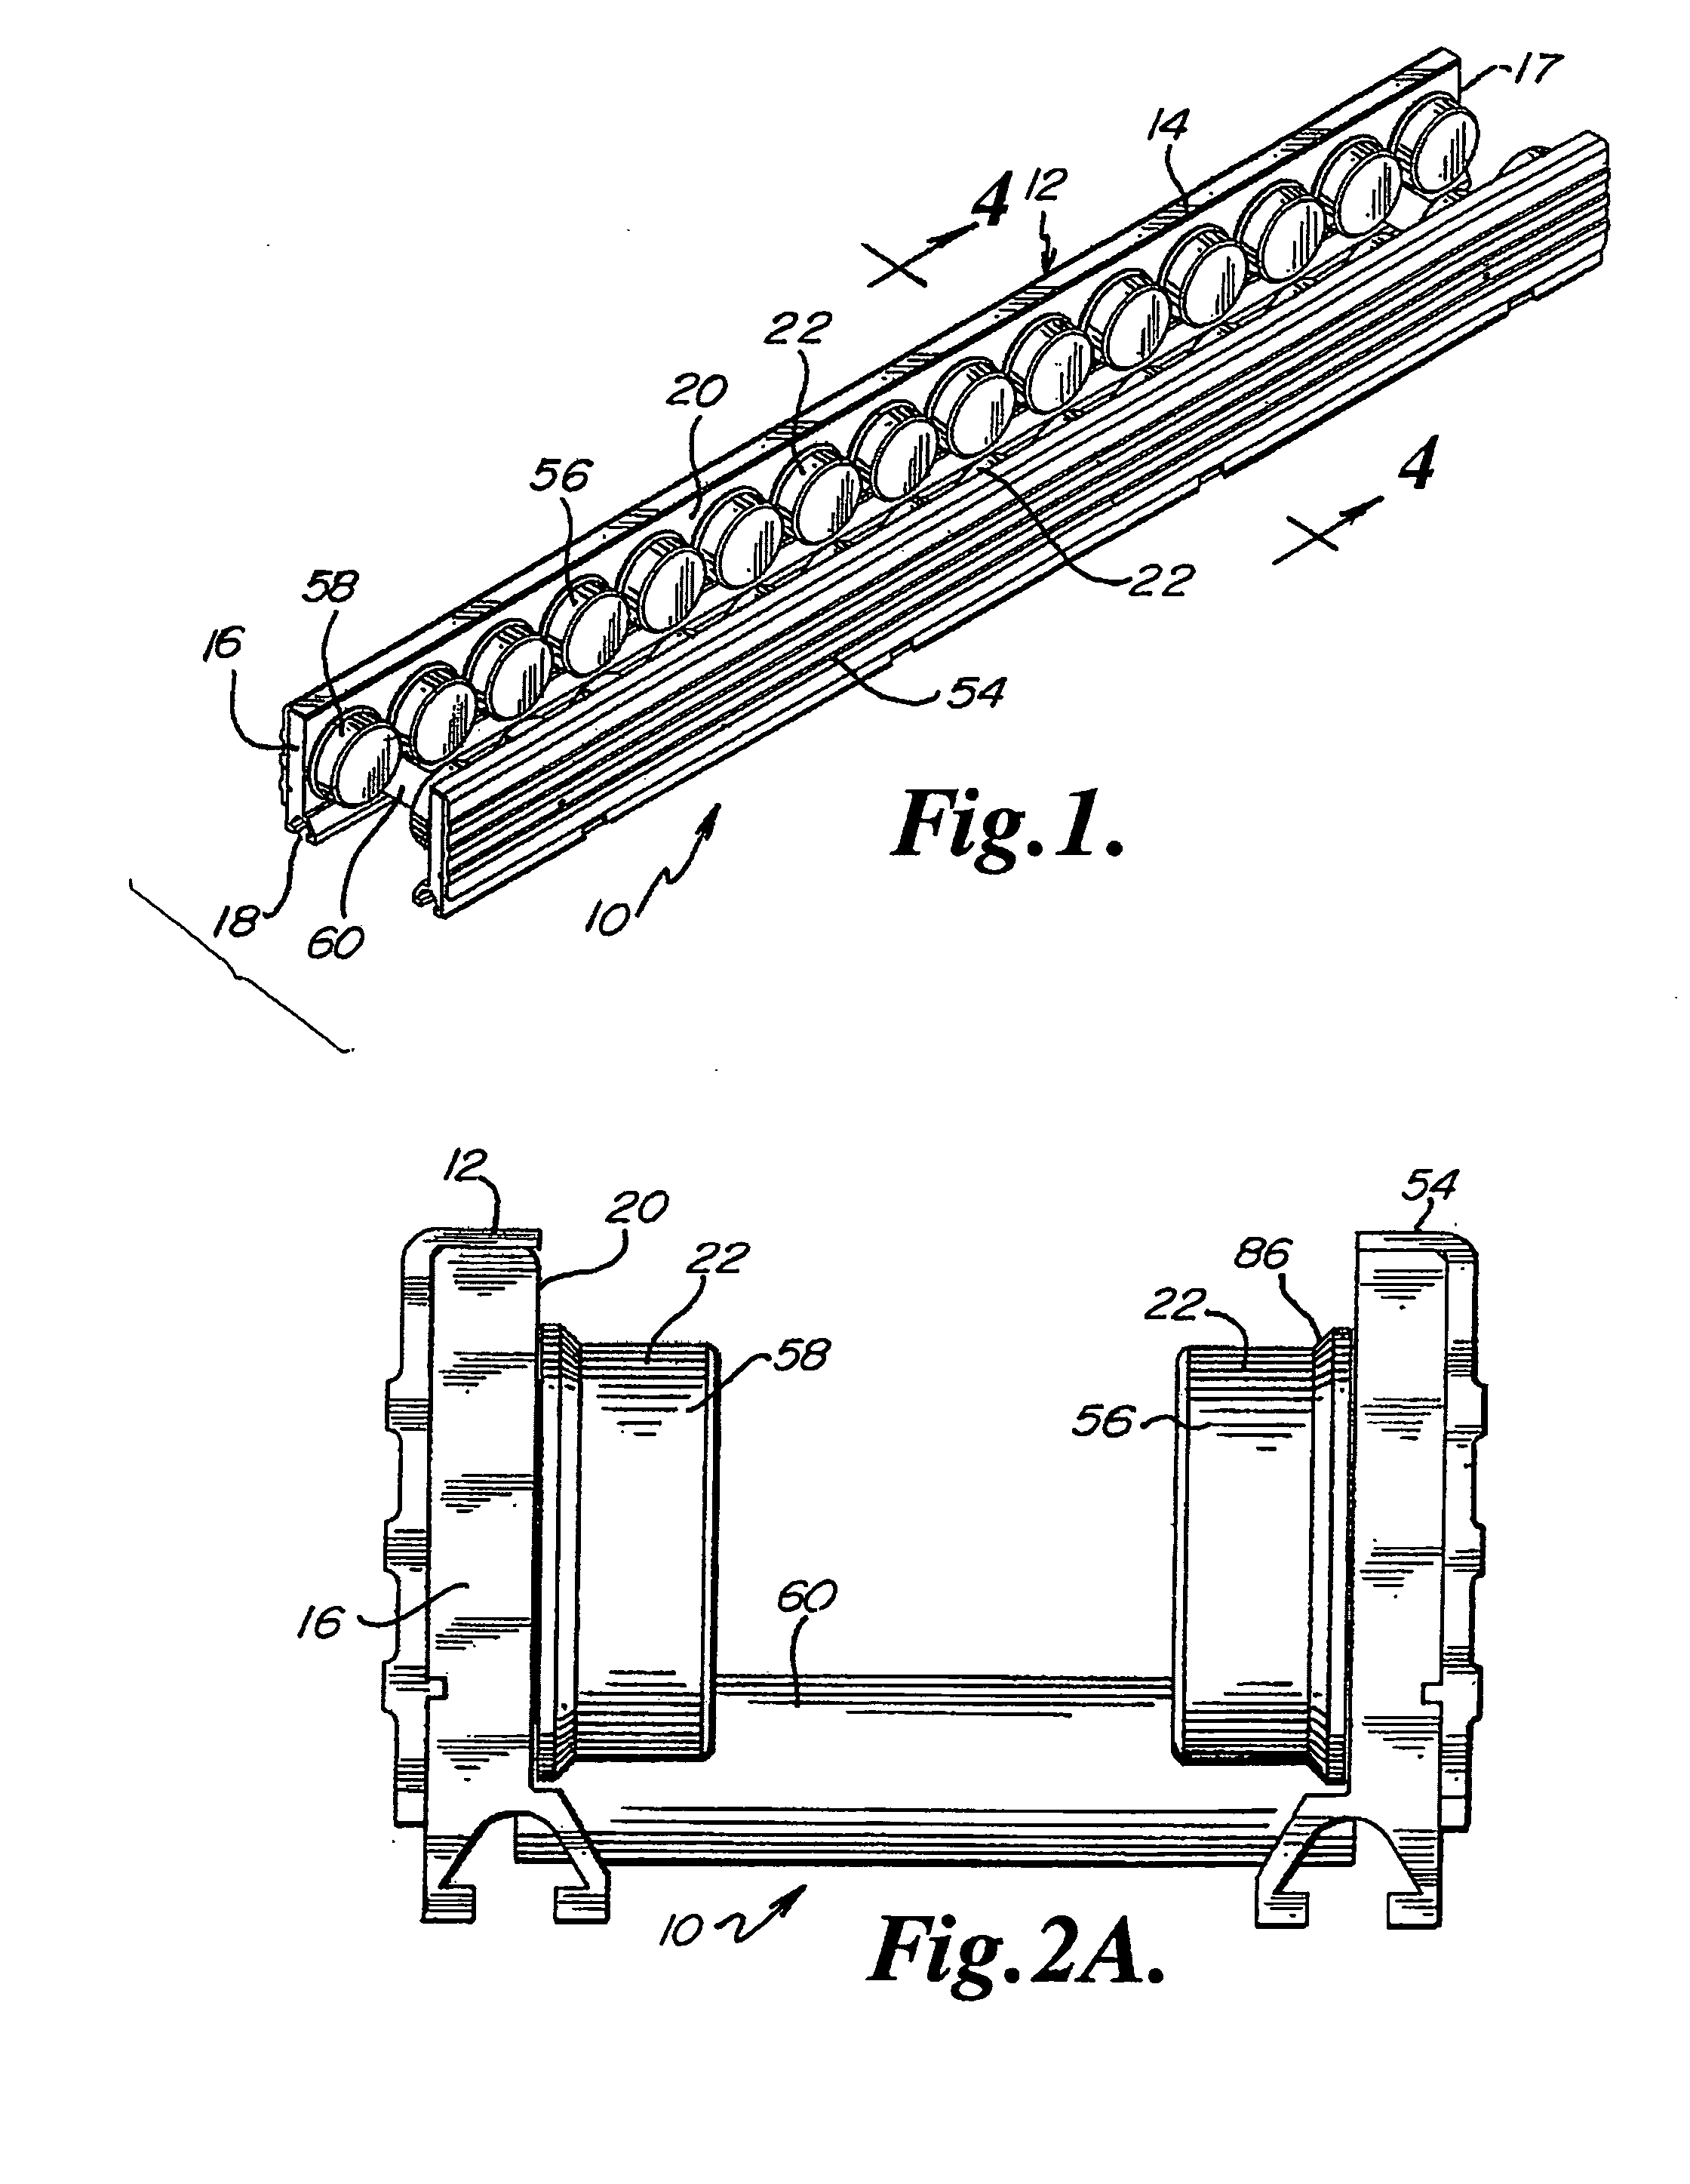 Conveyor assembly